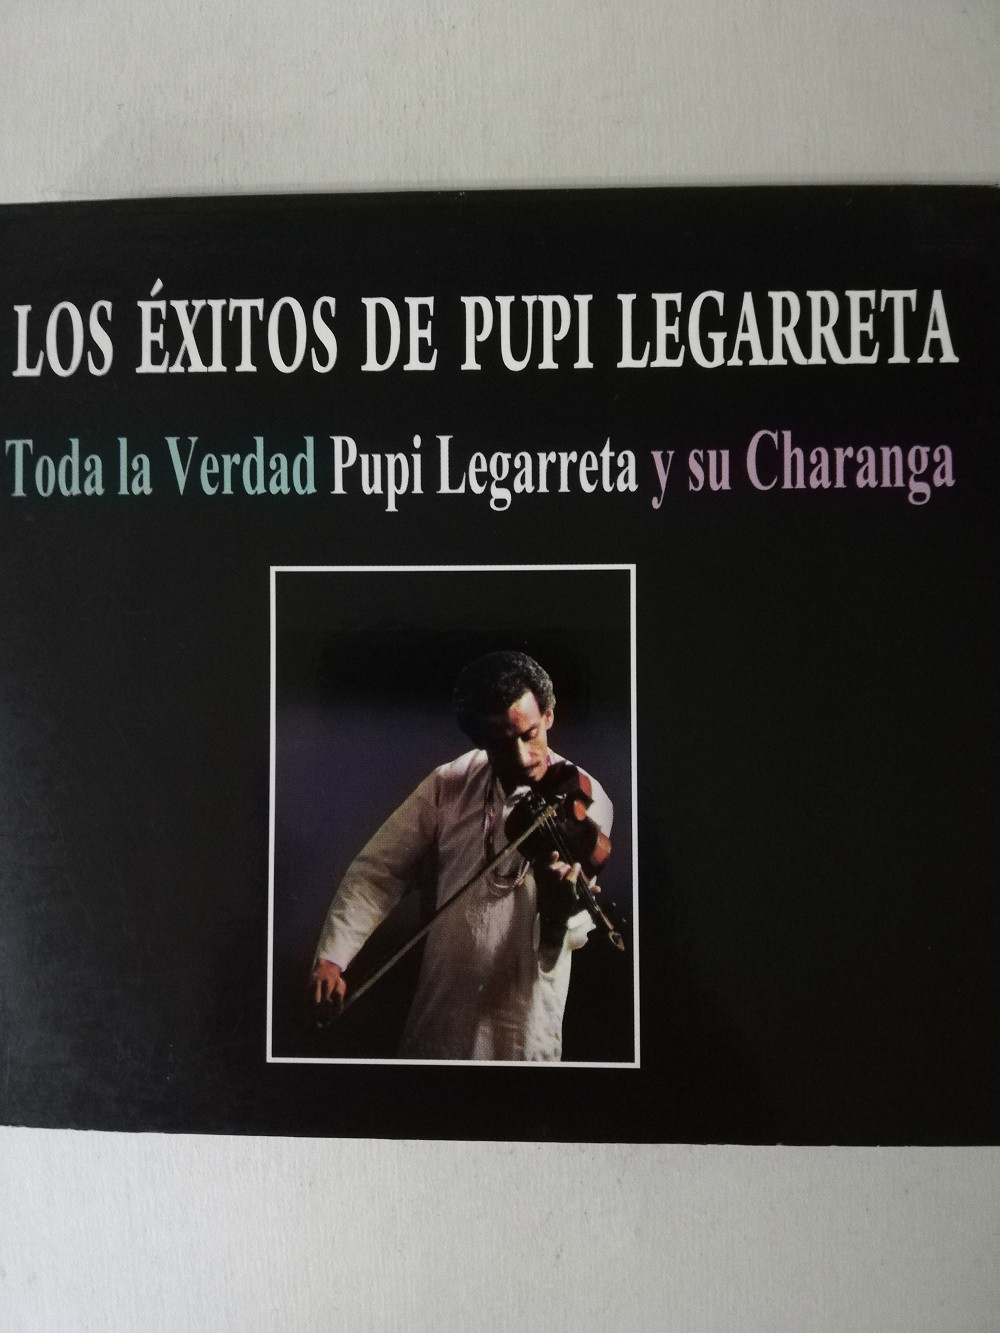 Imagen CD PUPI LEGARRETA Y SU CHARANGA - LOS EXITOS DE PUPI LEGARRETA